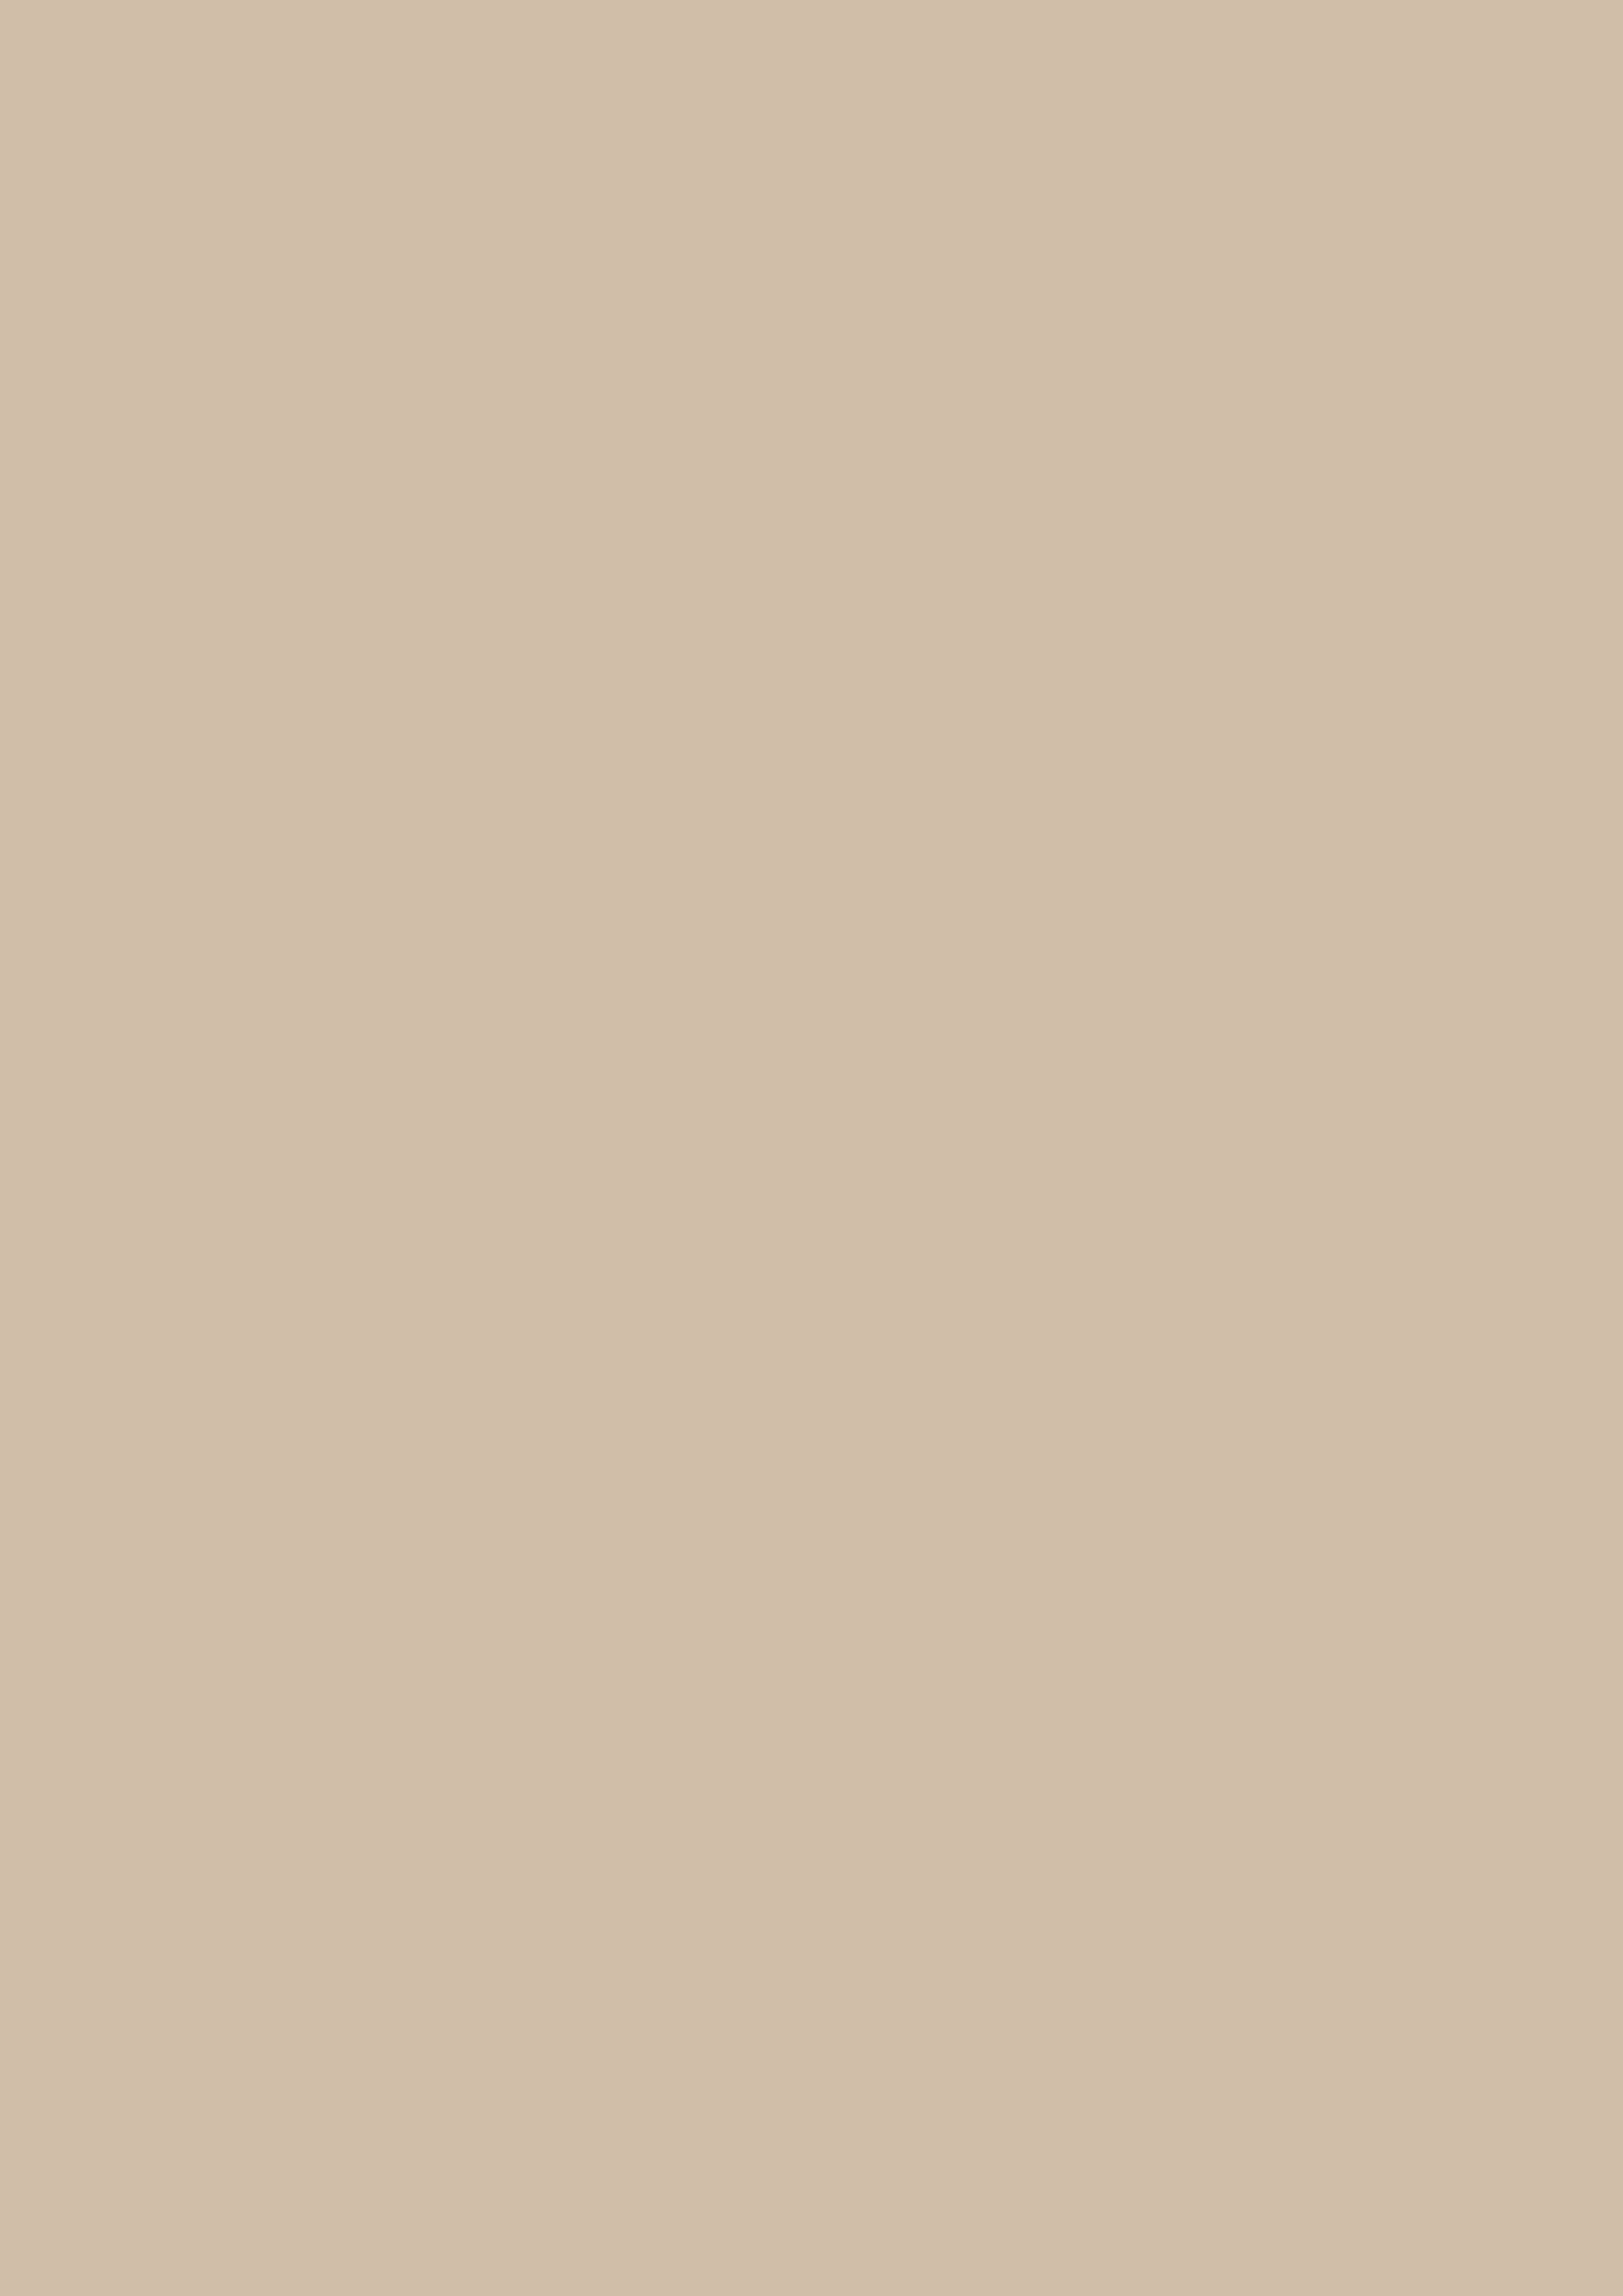 2480x3508 Dark Vanilla Solid Color Background